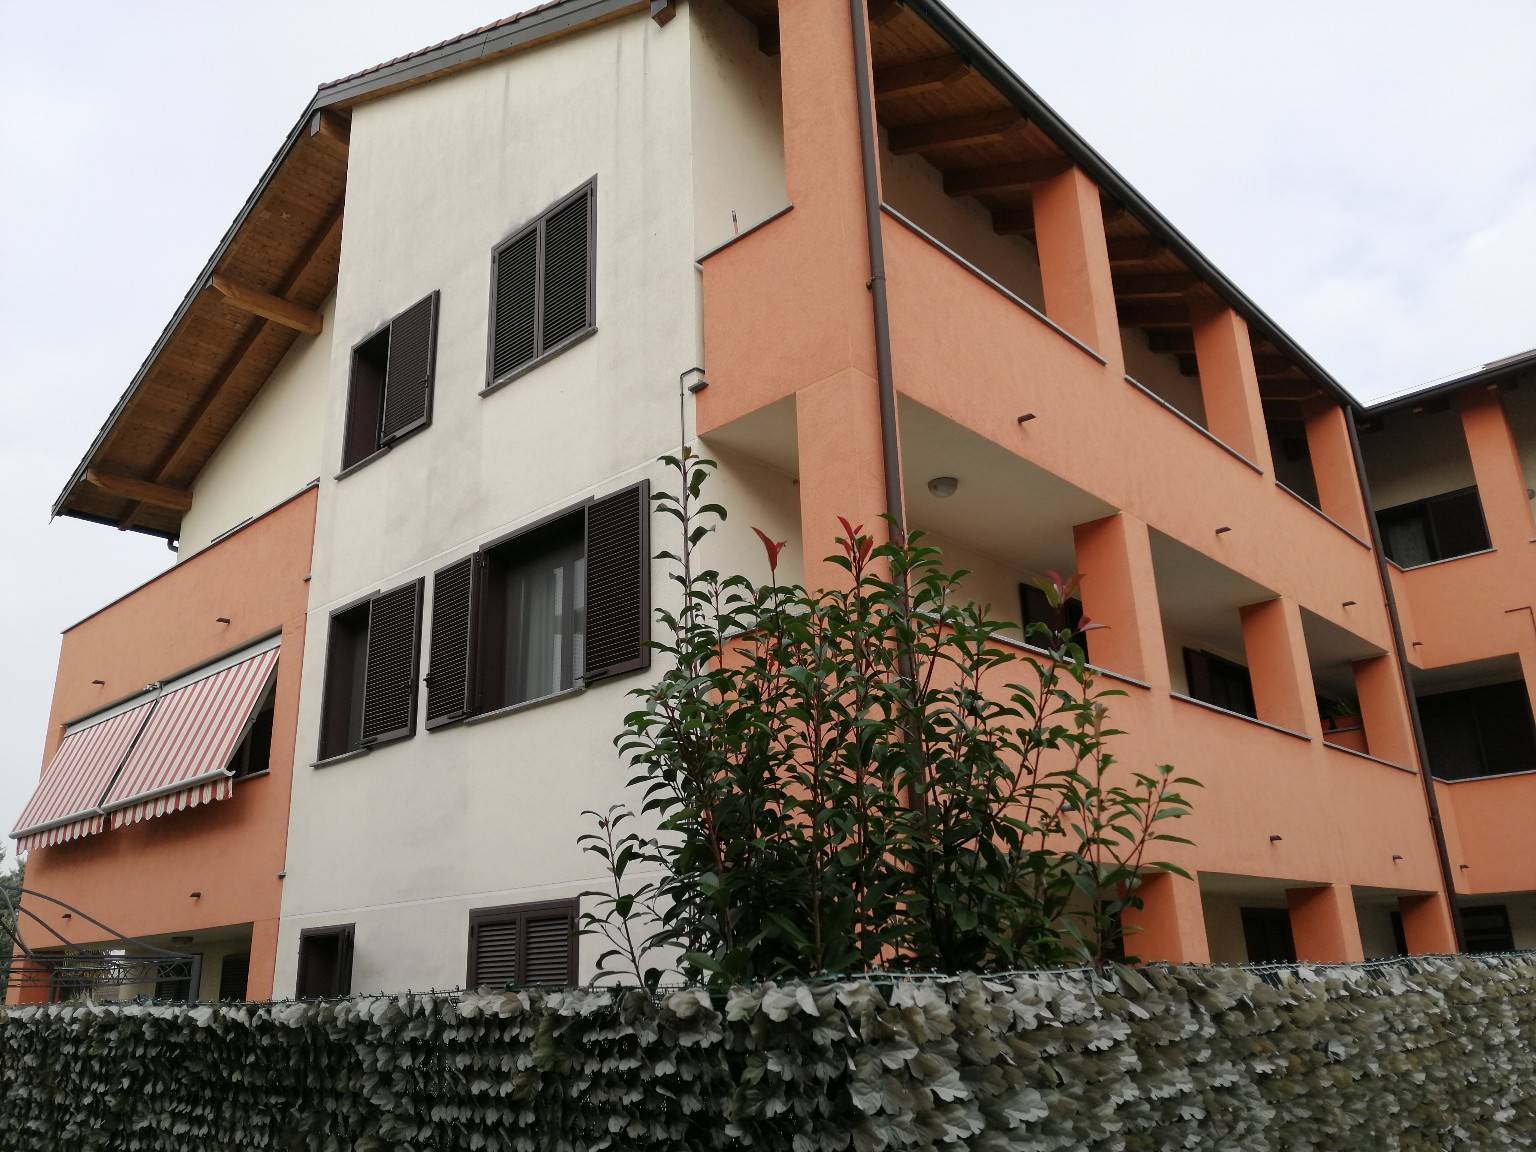 Appartamento in vendita a Casirate d'Adda, 3 locali, prezzo € 130.000 | PortaleAgenzieImmobiliari.it